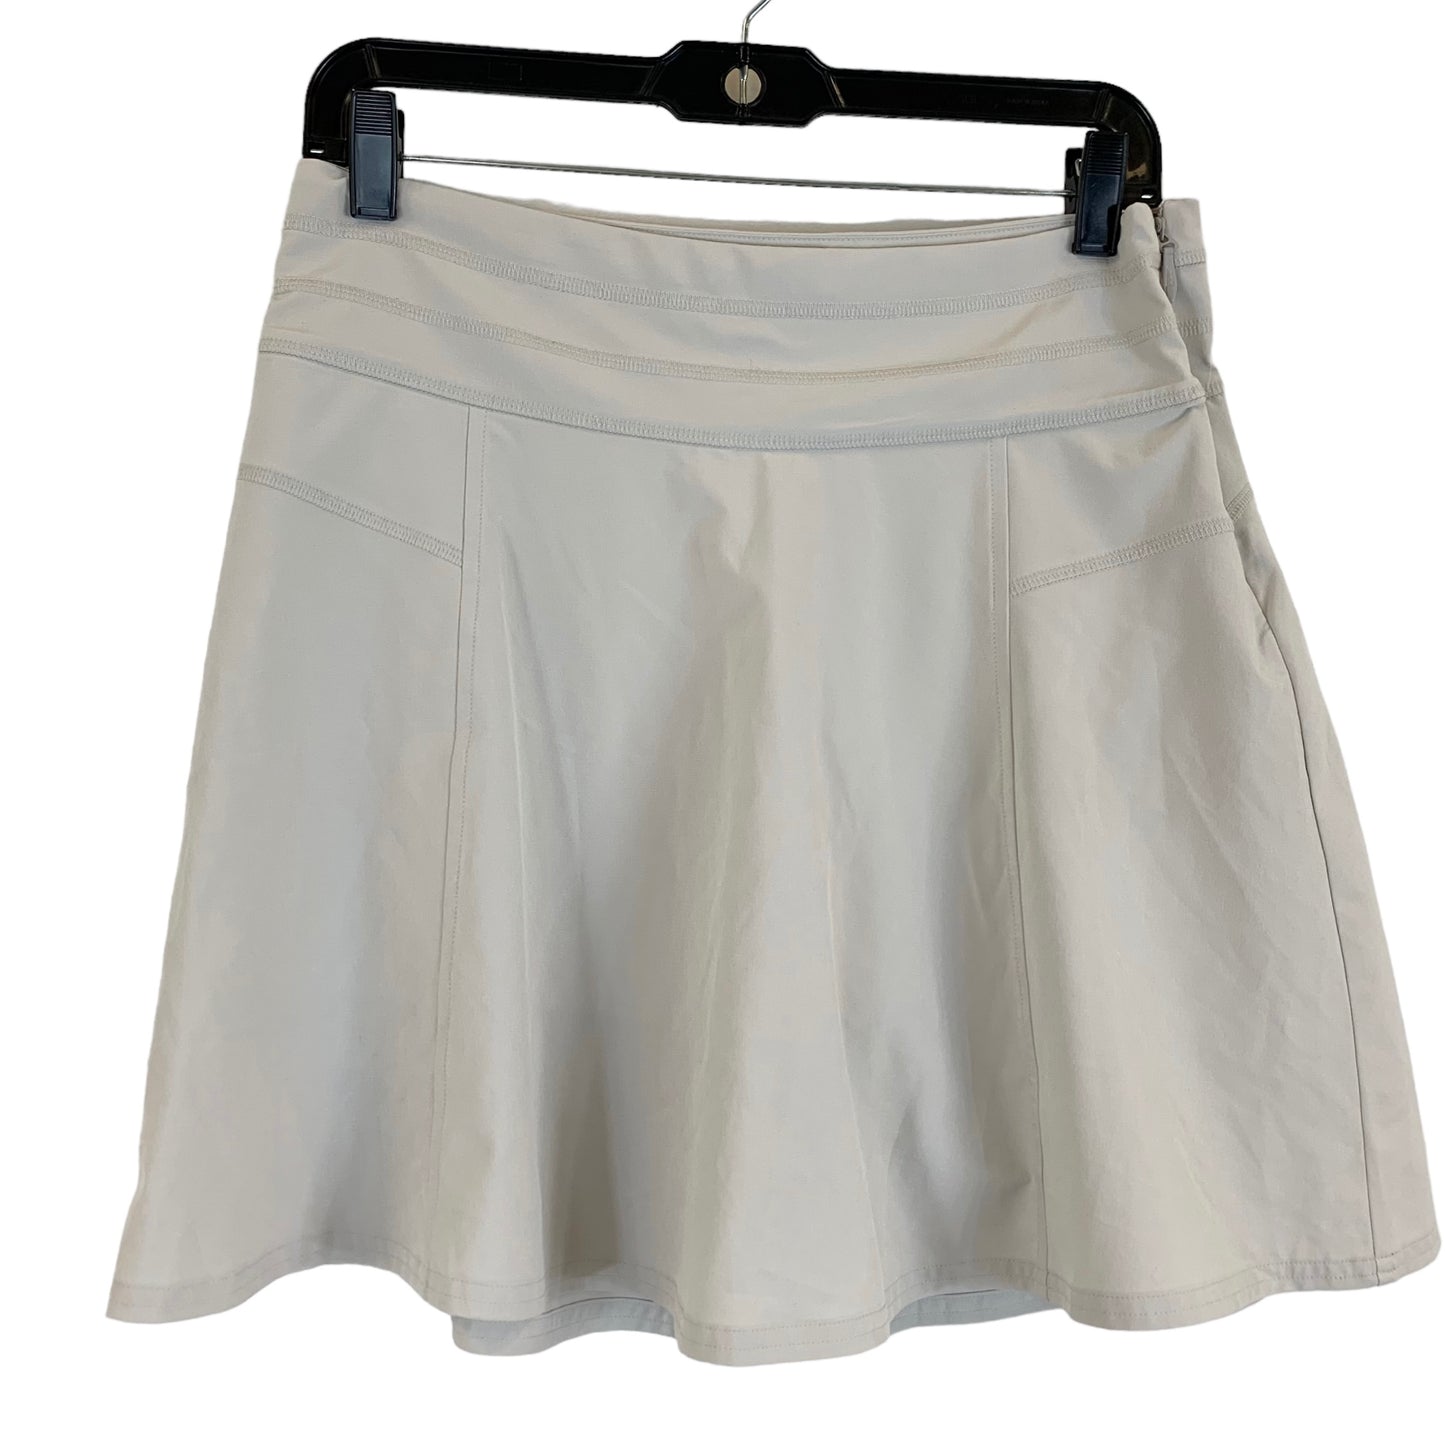 Athletic Skirt Skort By Athleta  Size: 4